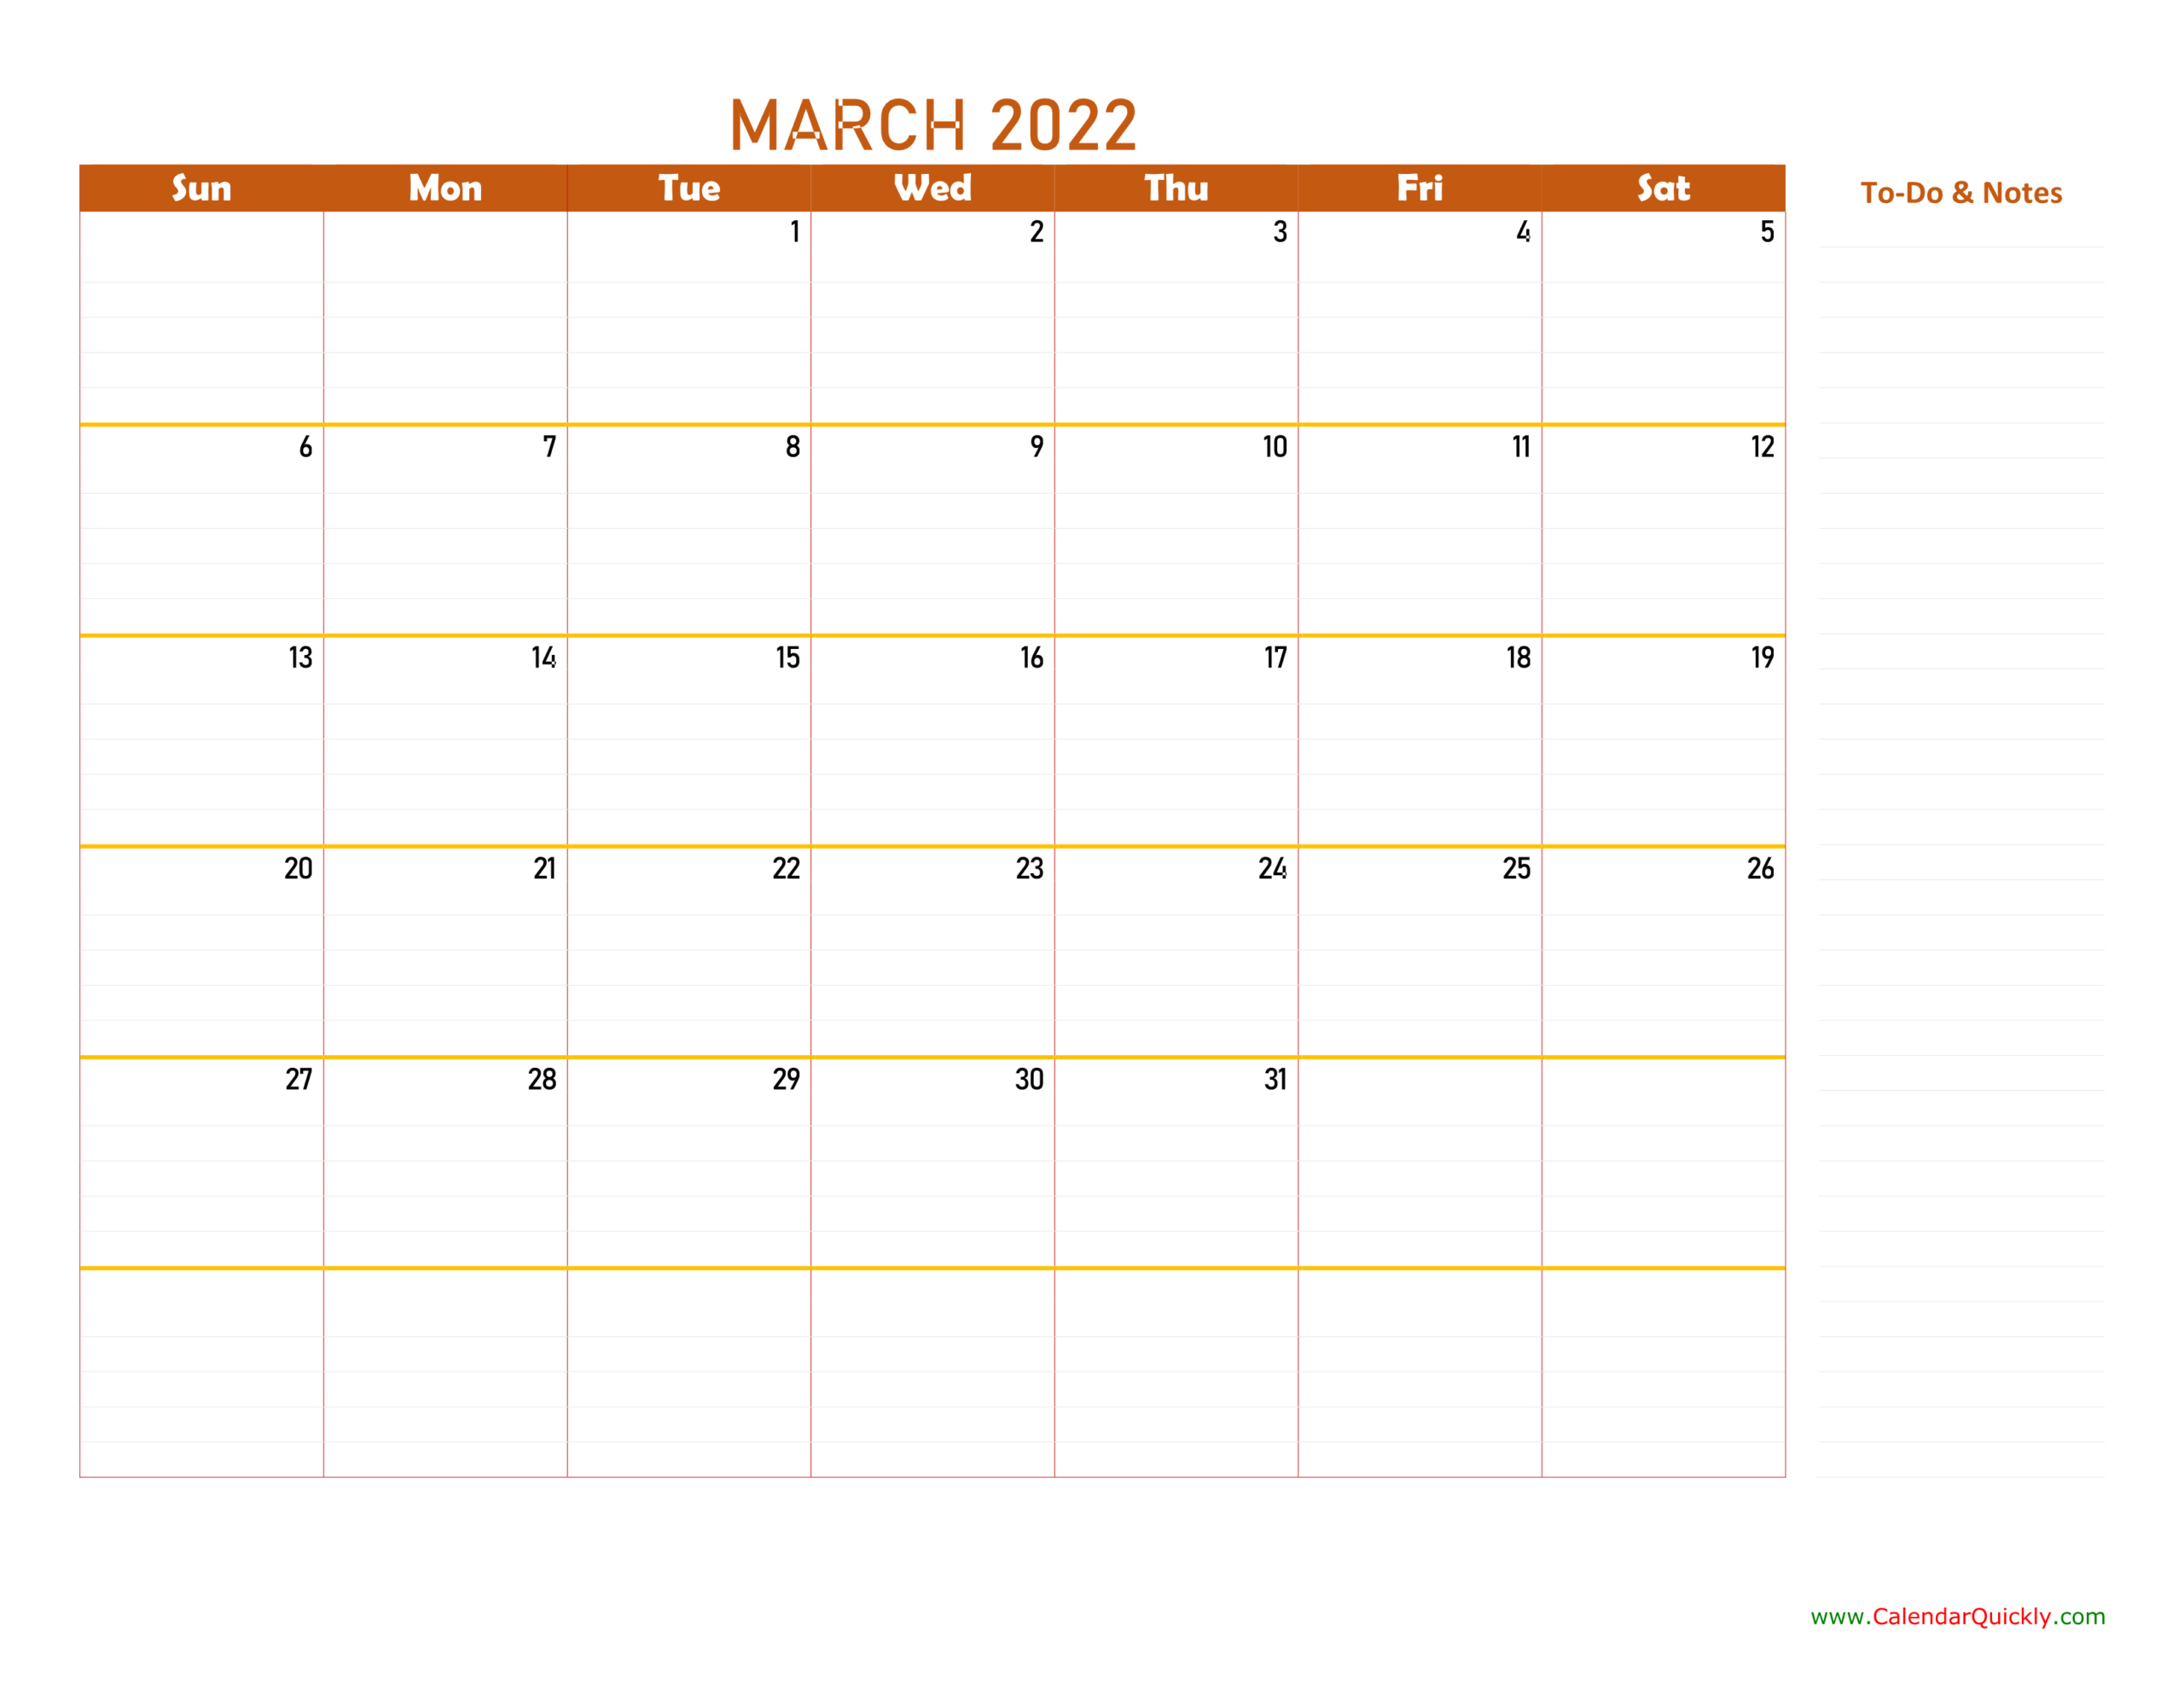 Catch Calendar 2022 Feb March